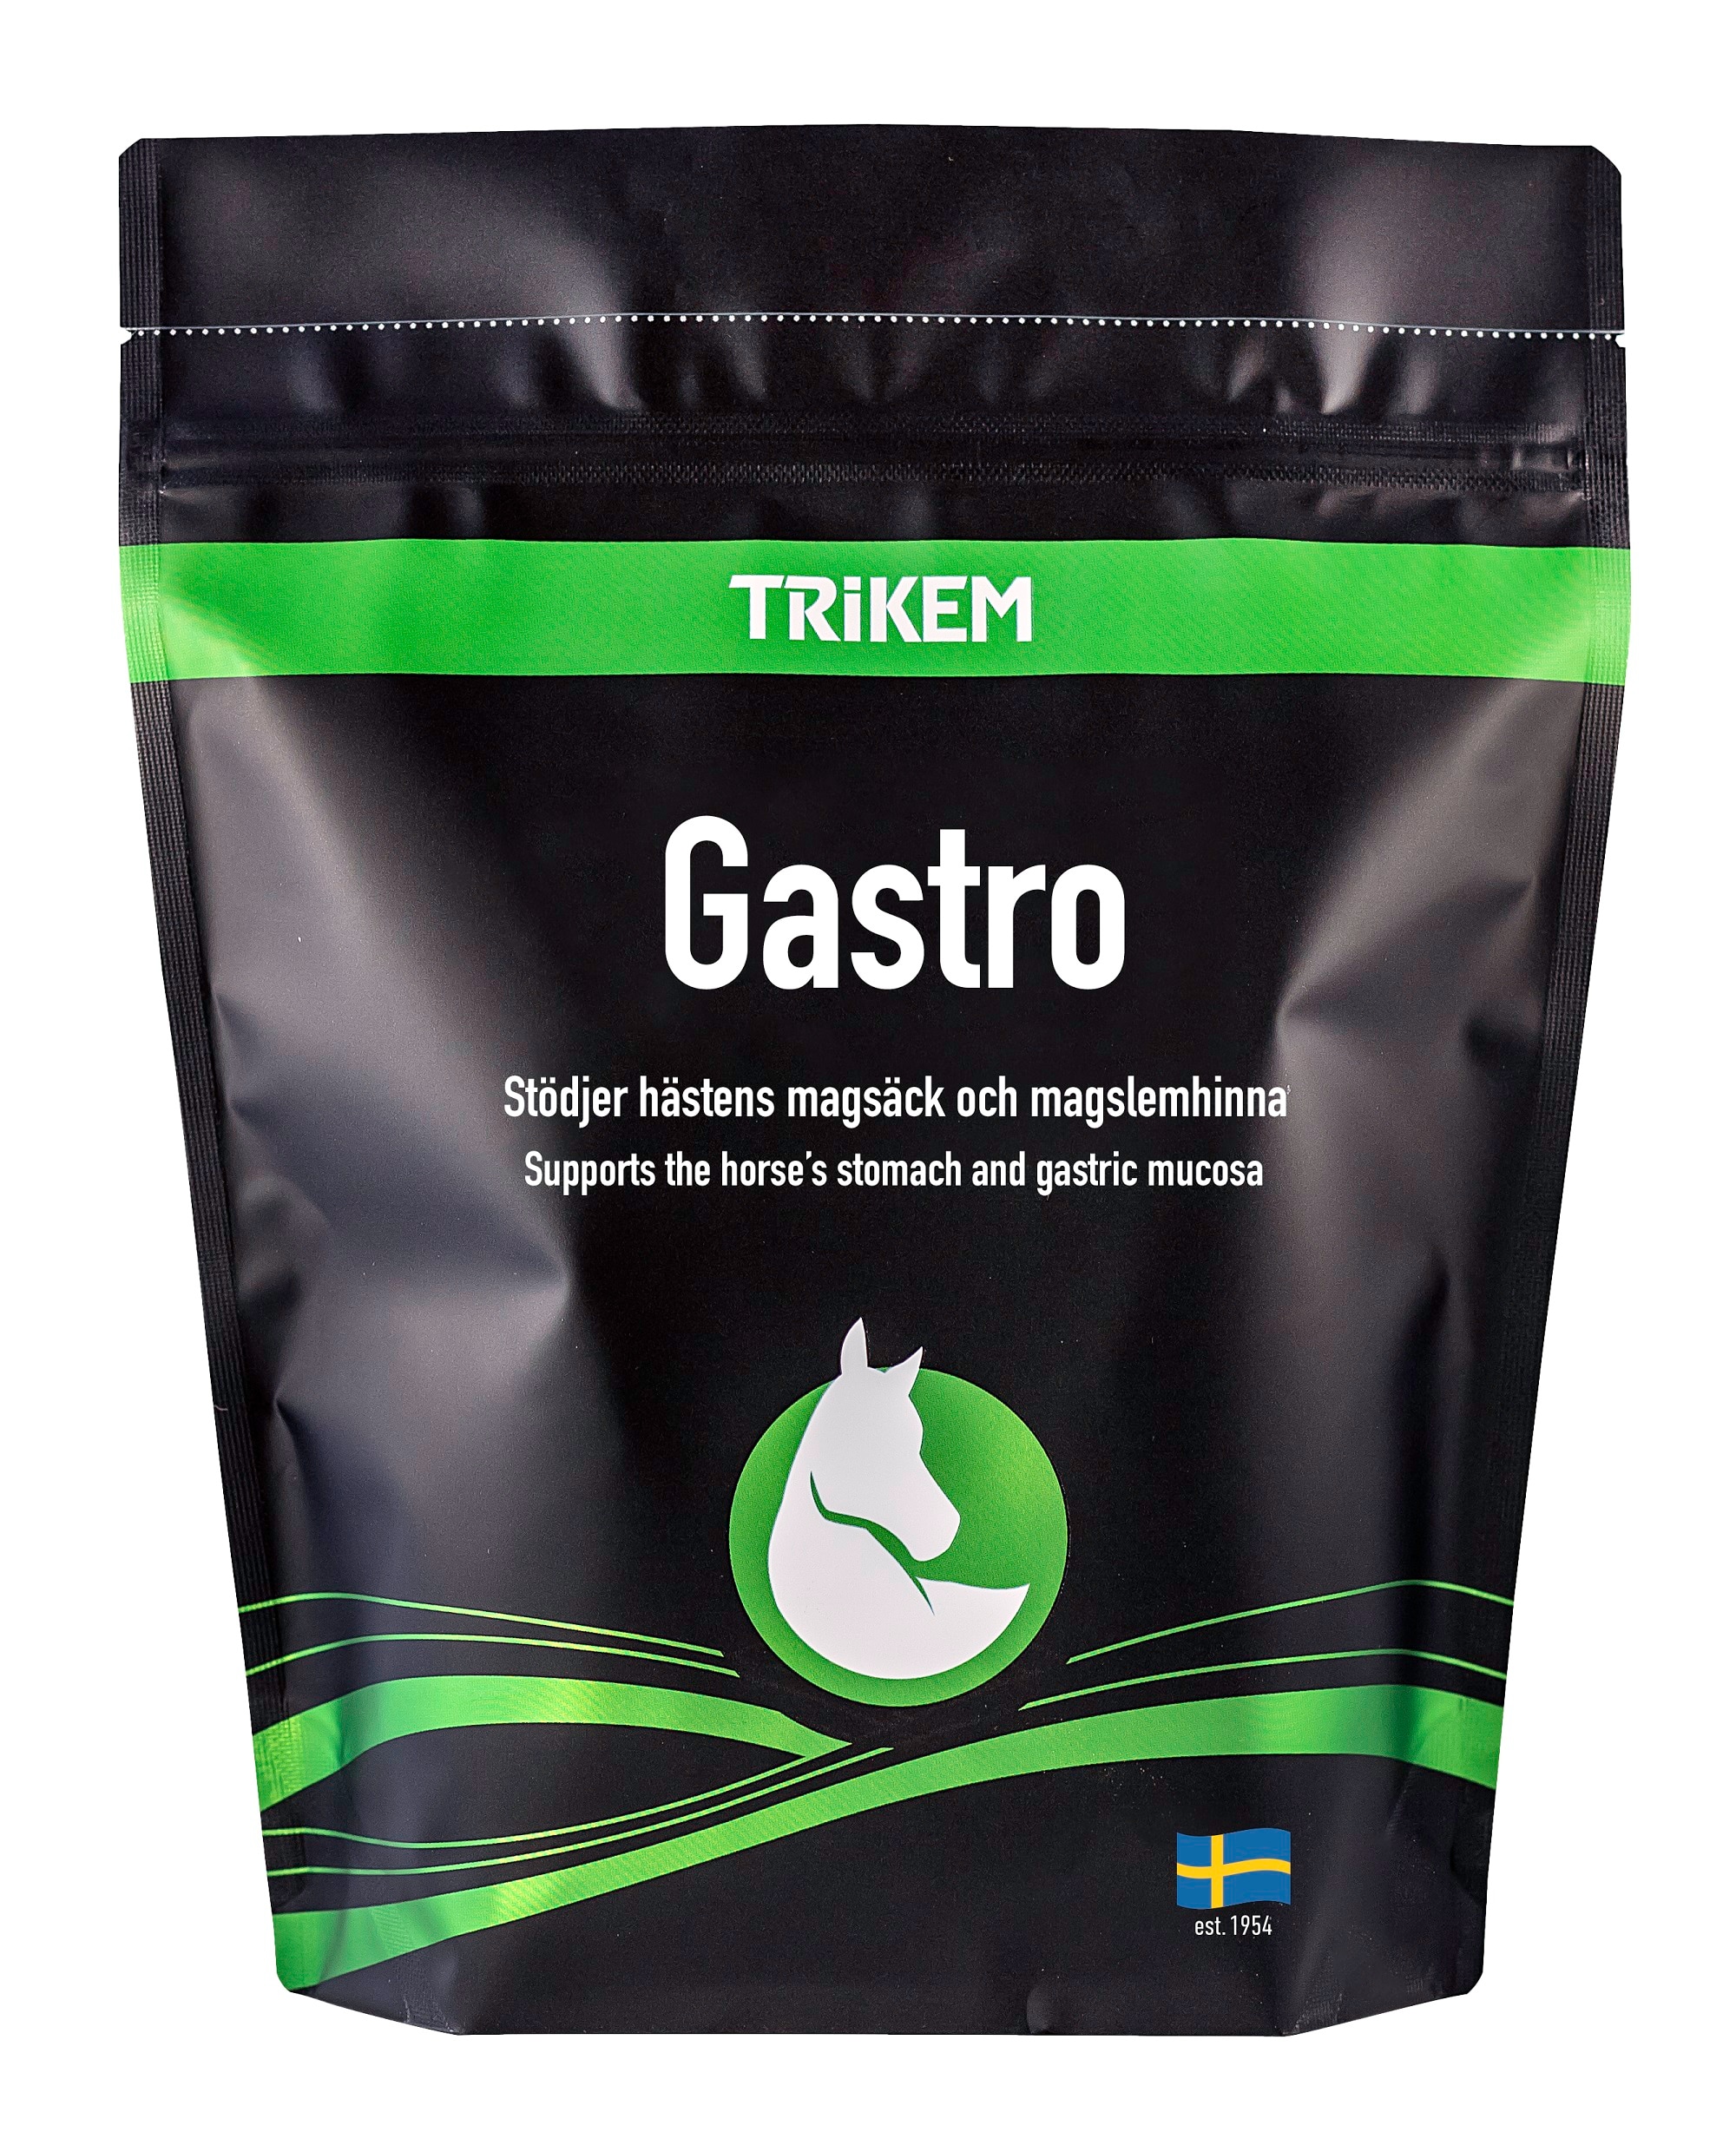 Trikem Gastro, 1000 g